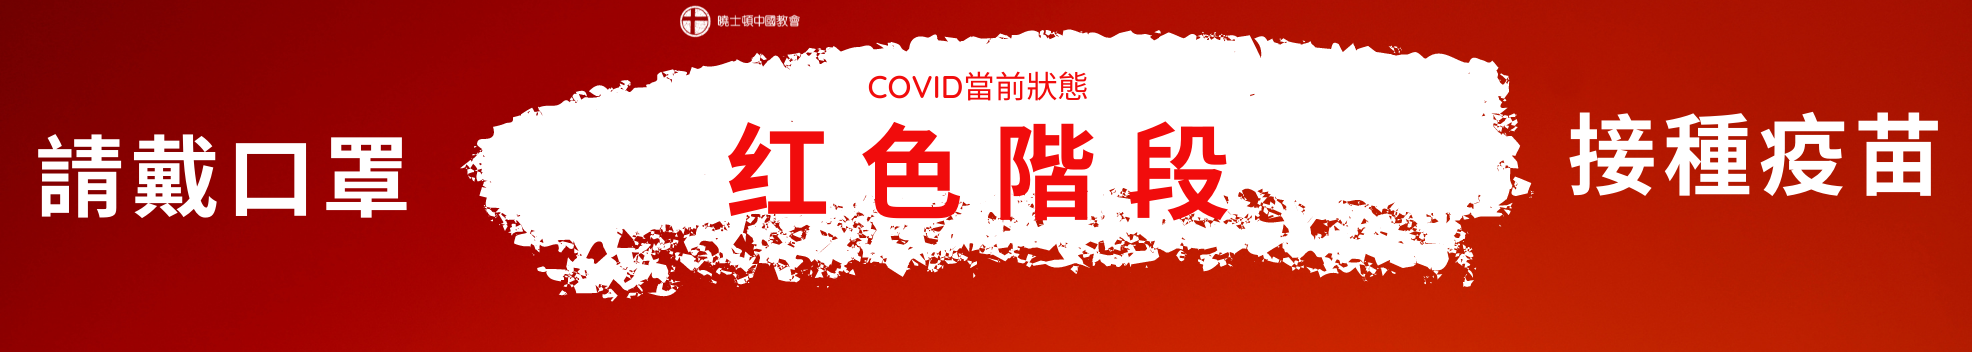 covid update red